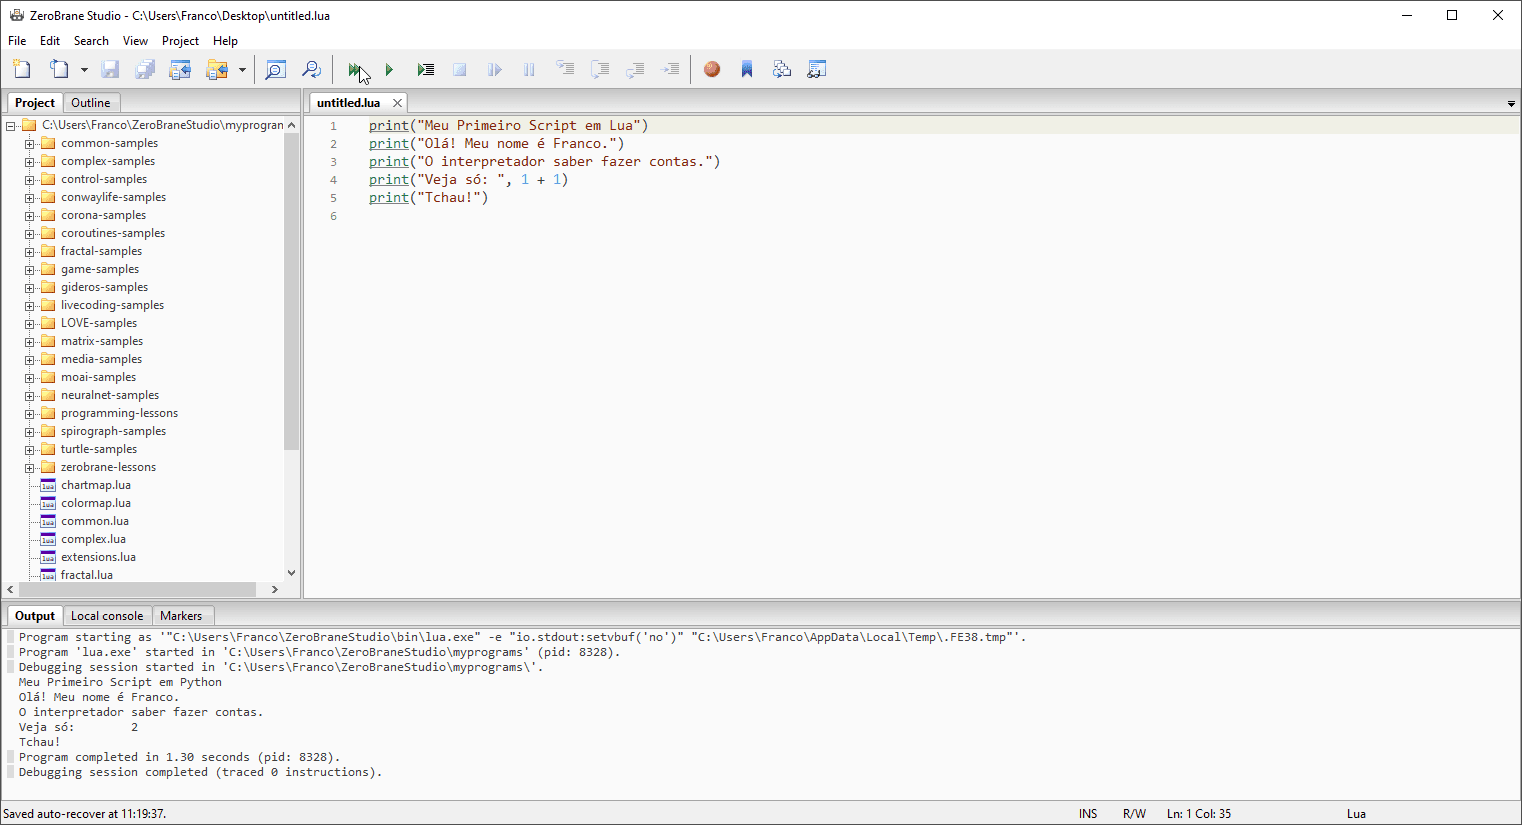 Exemplo de saída de um programa usando o IDE `ZeroBrane Studio`.